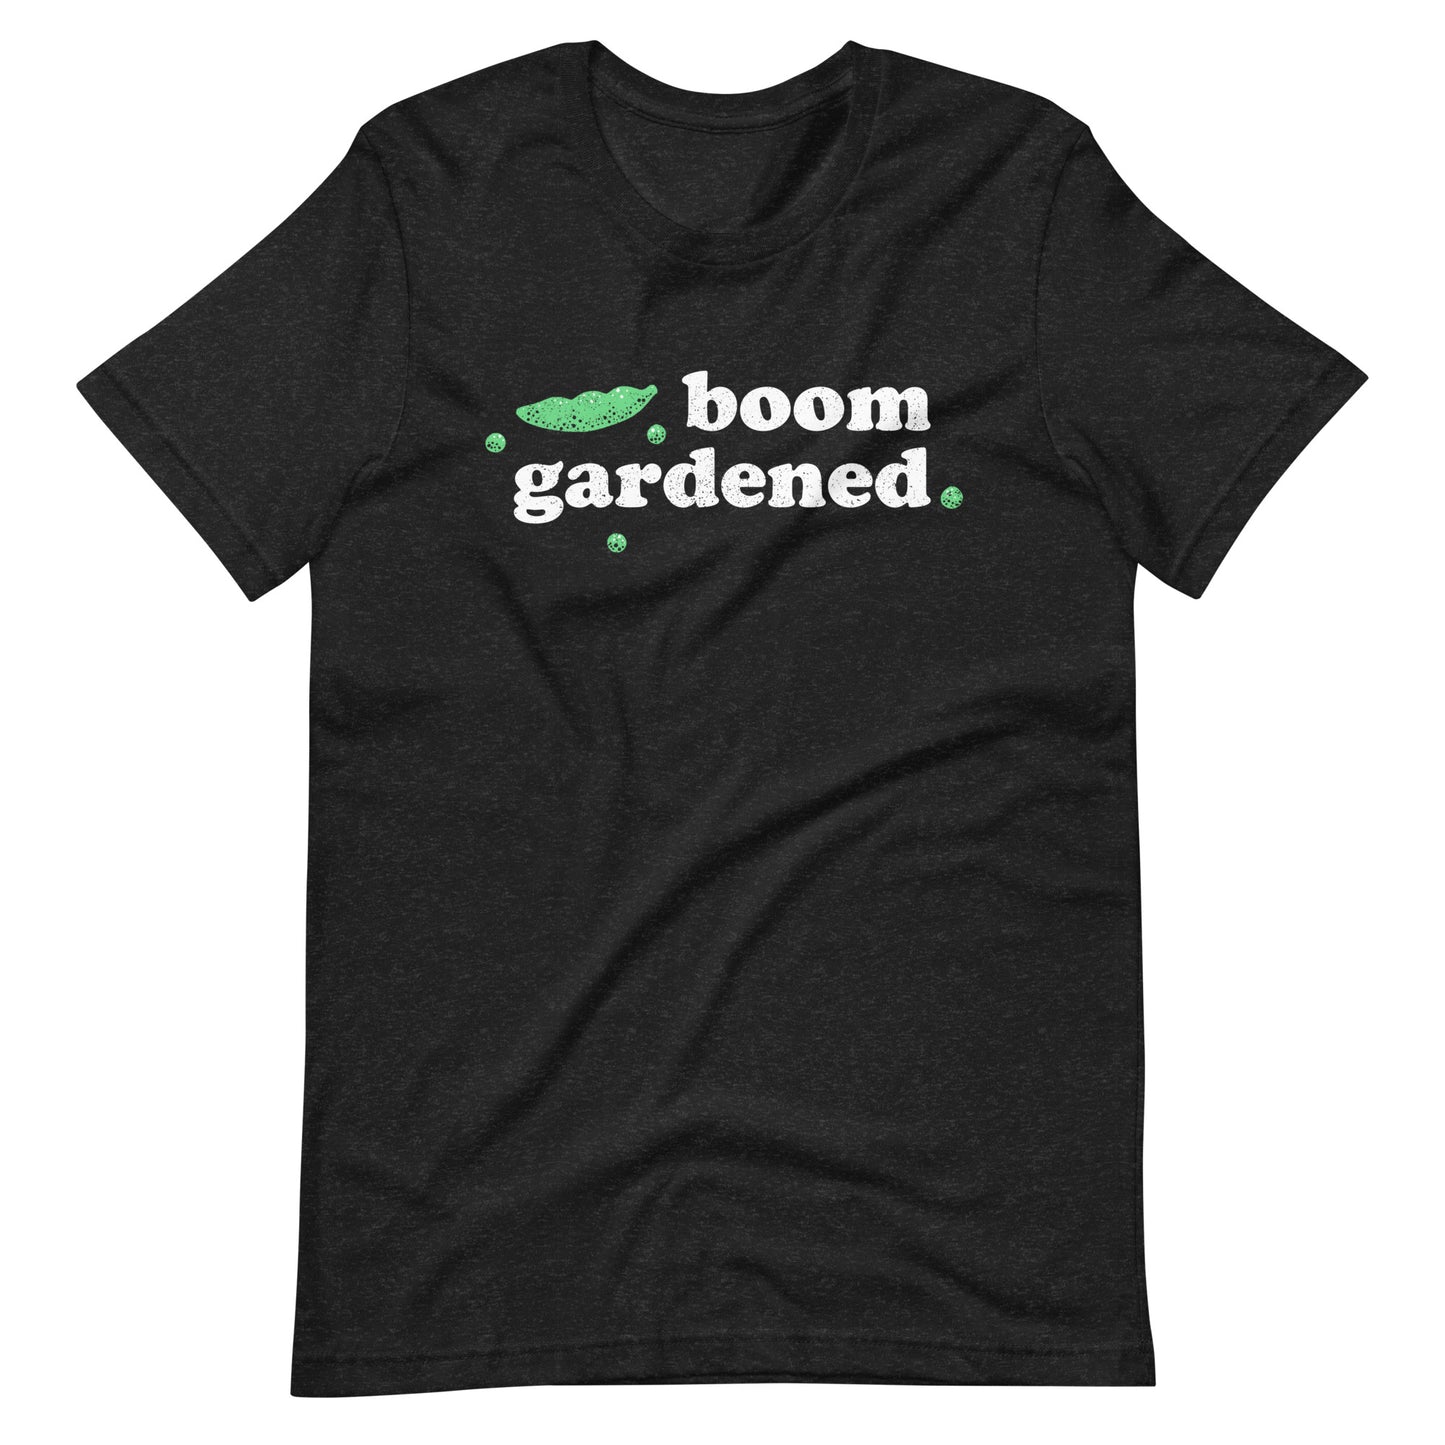 Boom Gardened - Work on Your Best Garden Layout T-shirt